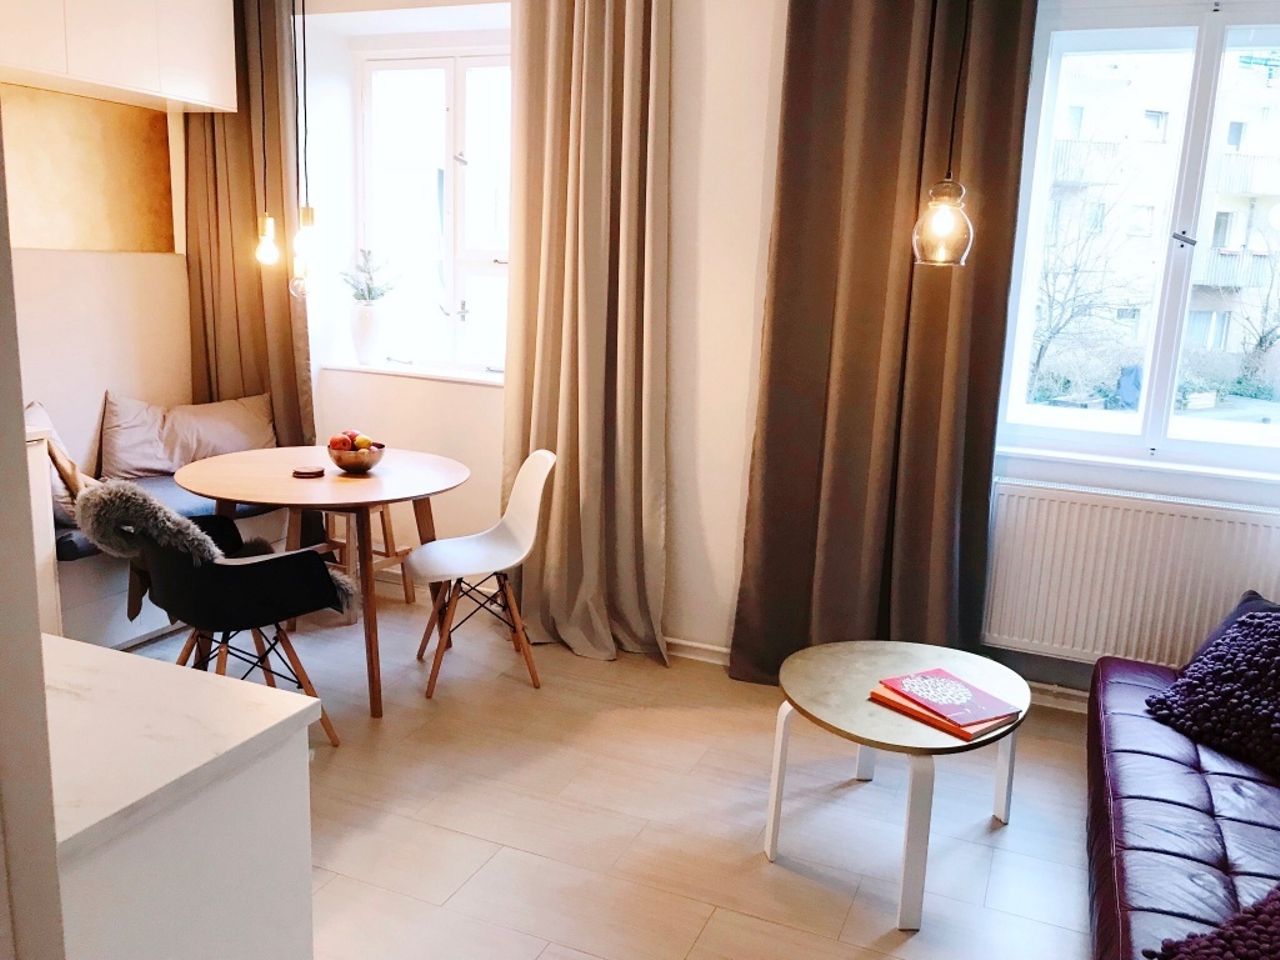 Modern, design apartment in central, quite location by lake Lietzensee (Charlottenburg)